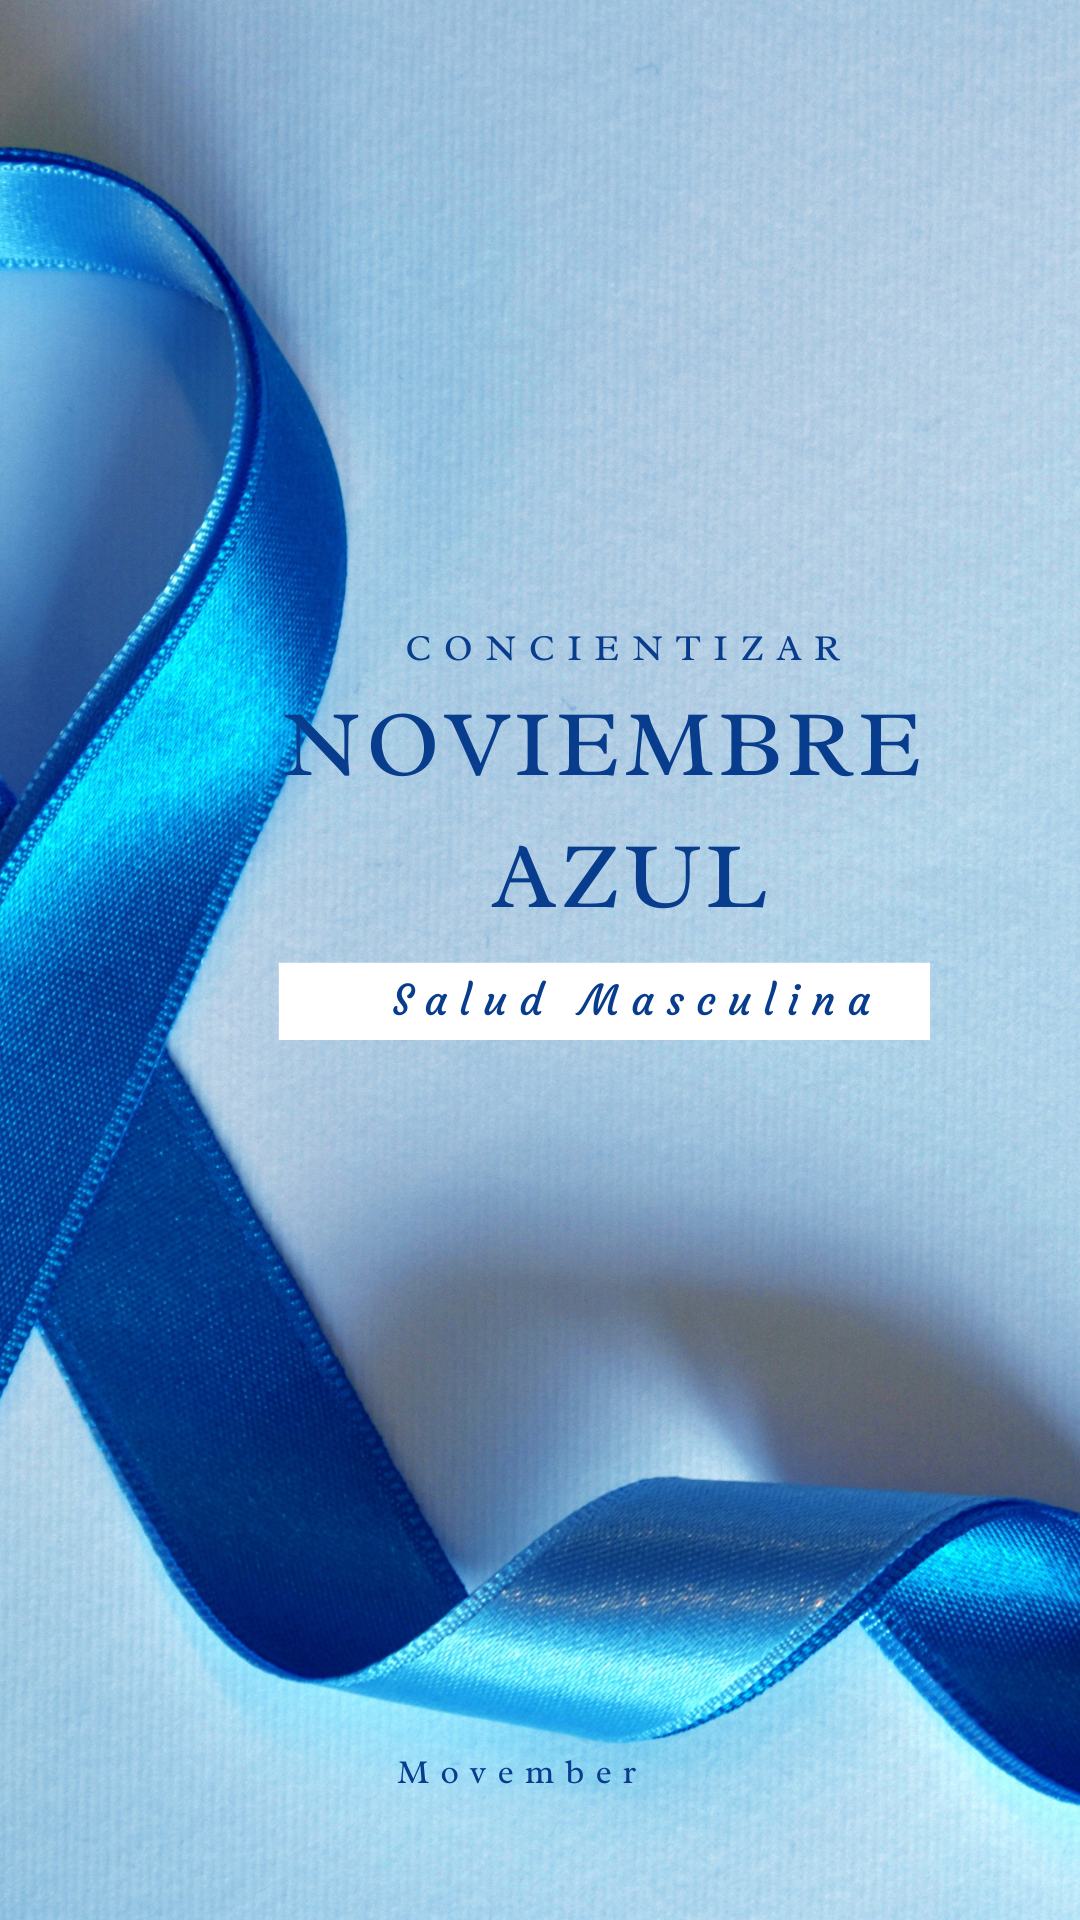 «Noviembre Azul», concientizar sobre el Cáncer de Próstata y la Salud Masculina